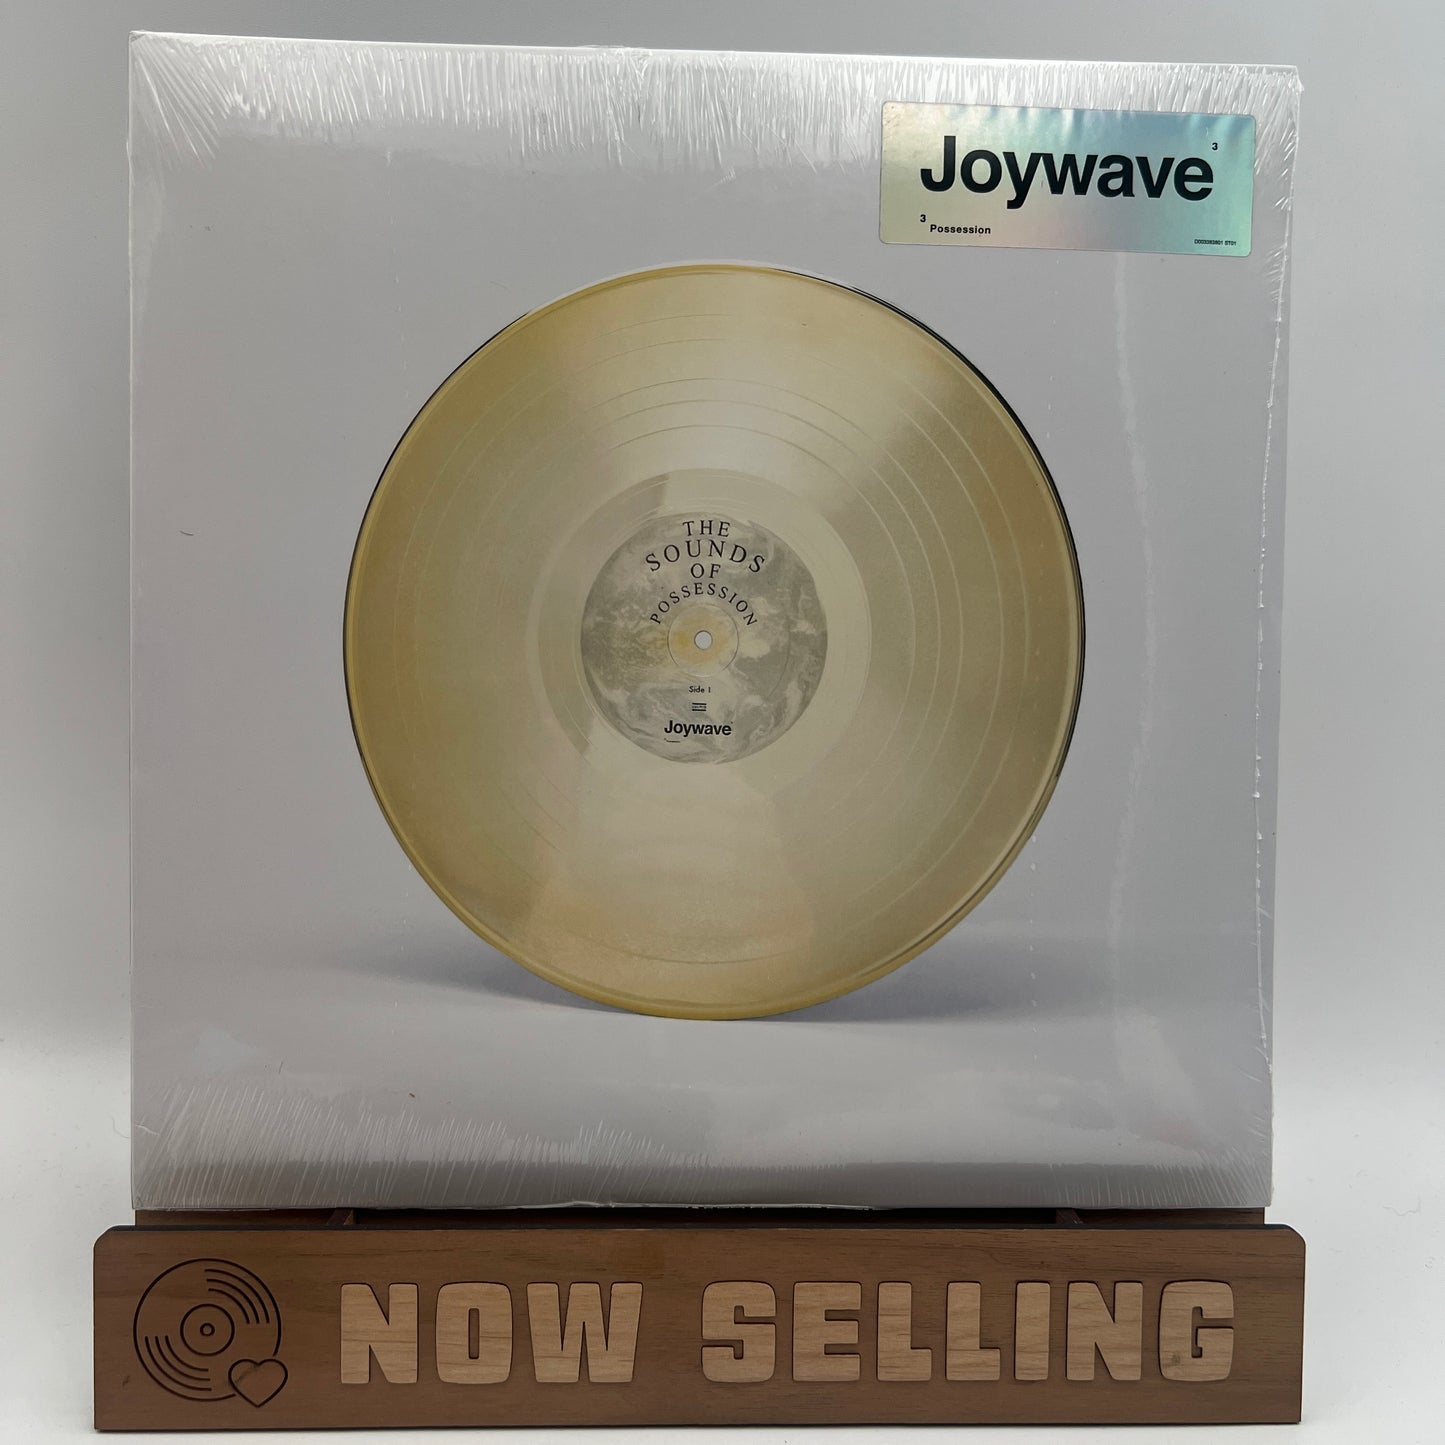 Joywave - Possession Vinyl LP SEALED Clear